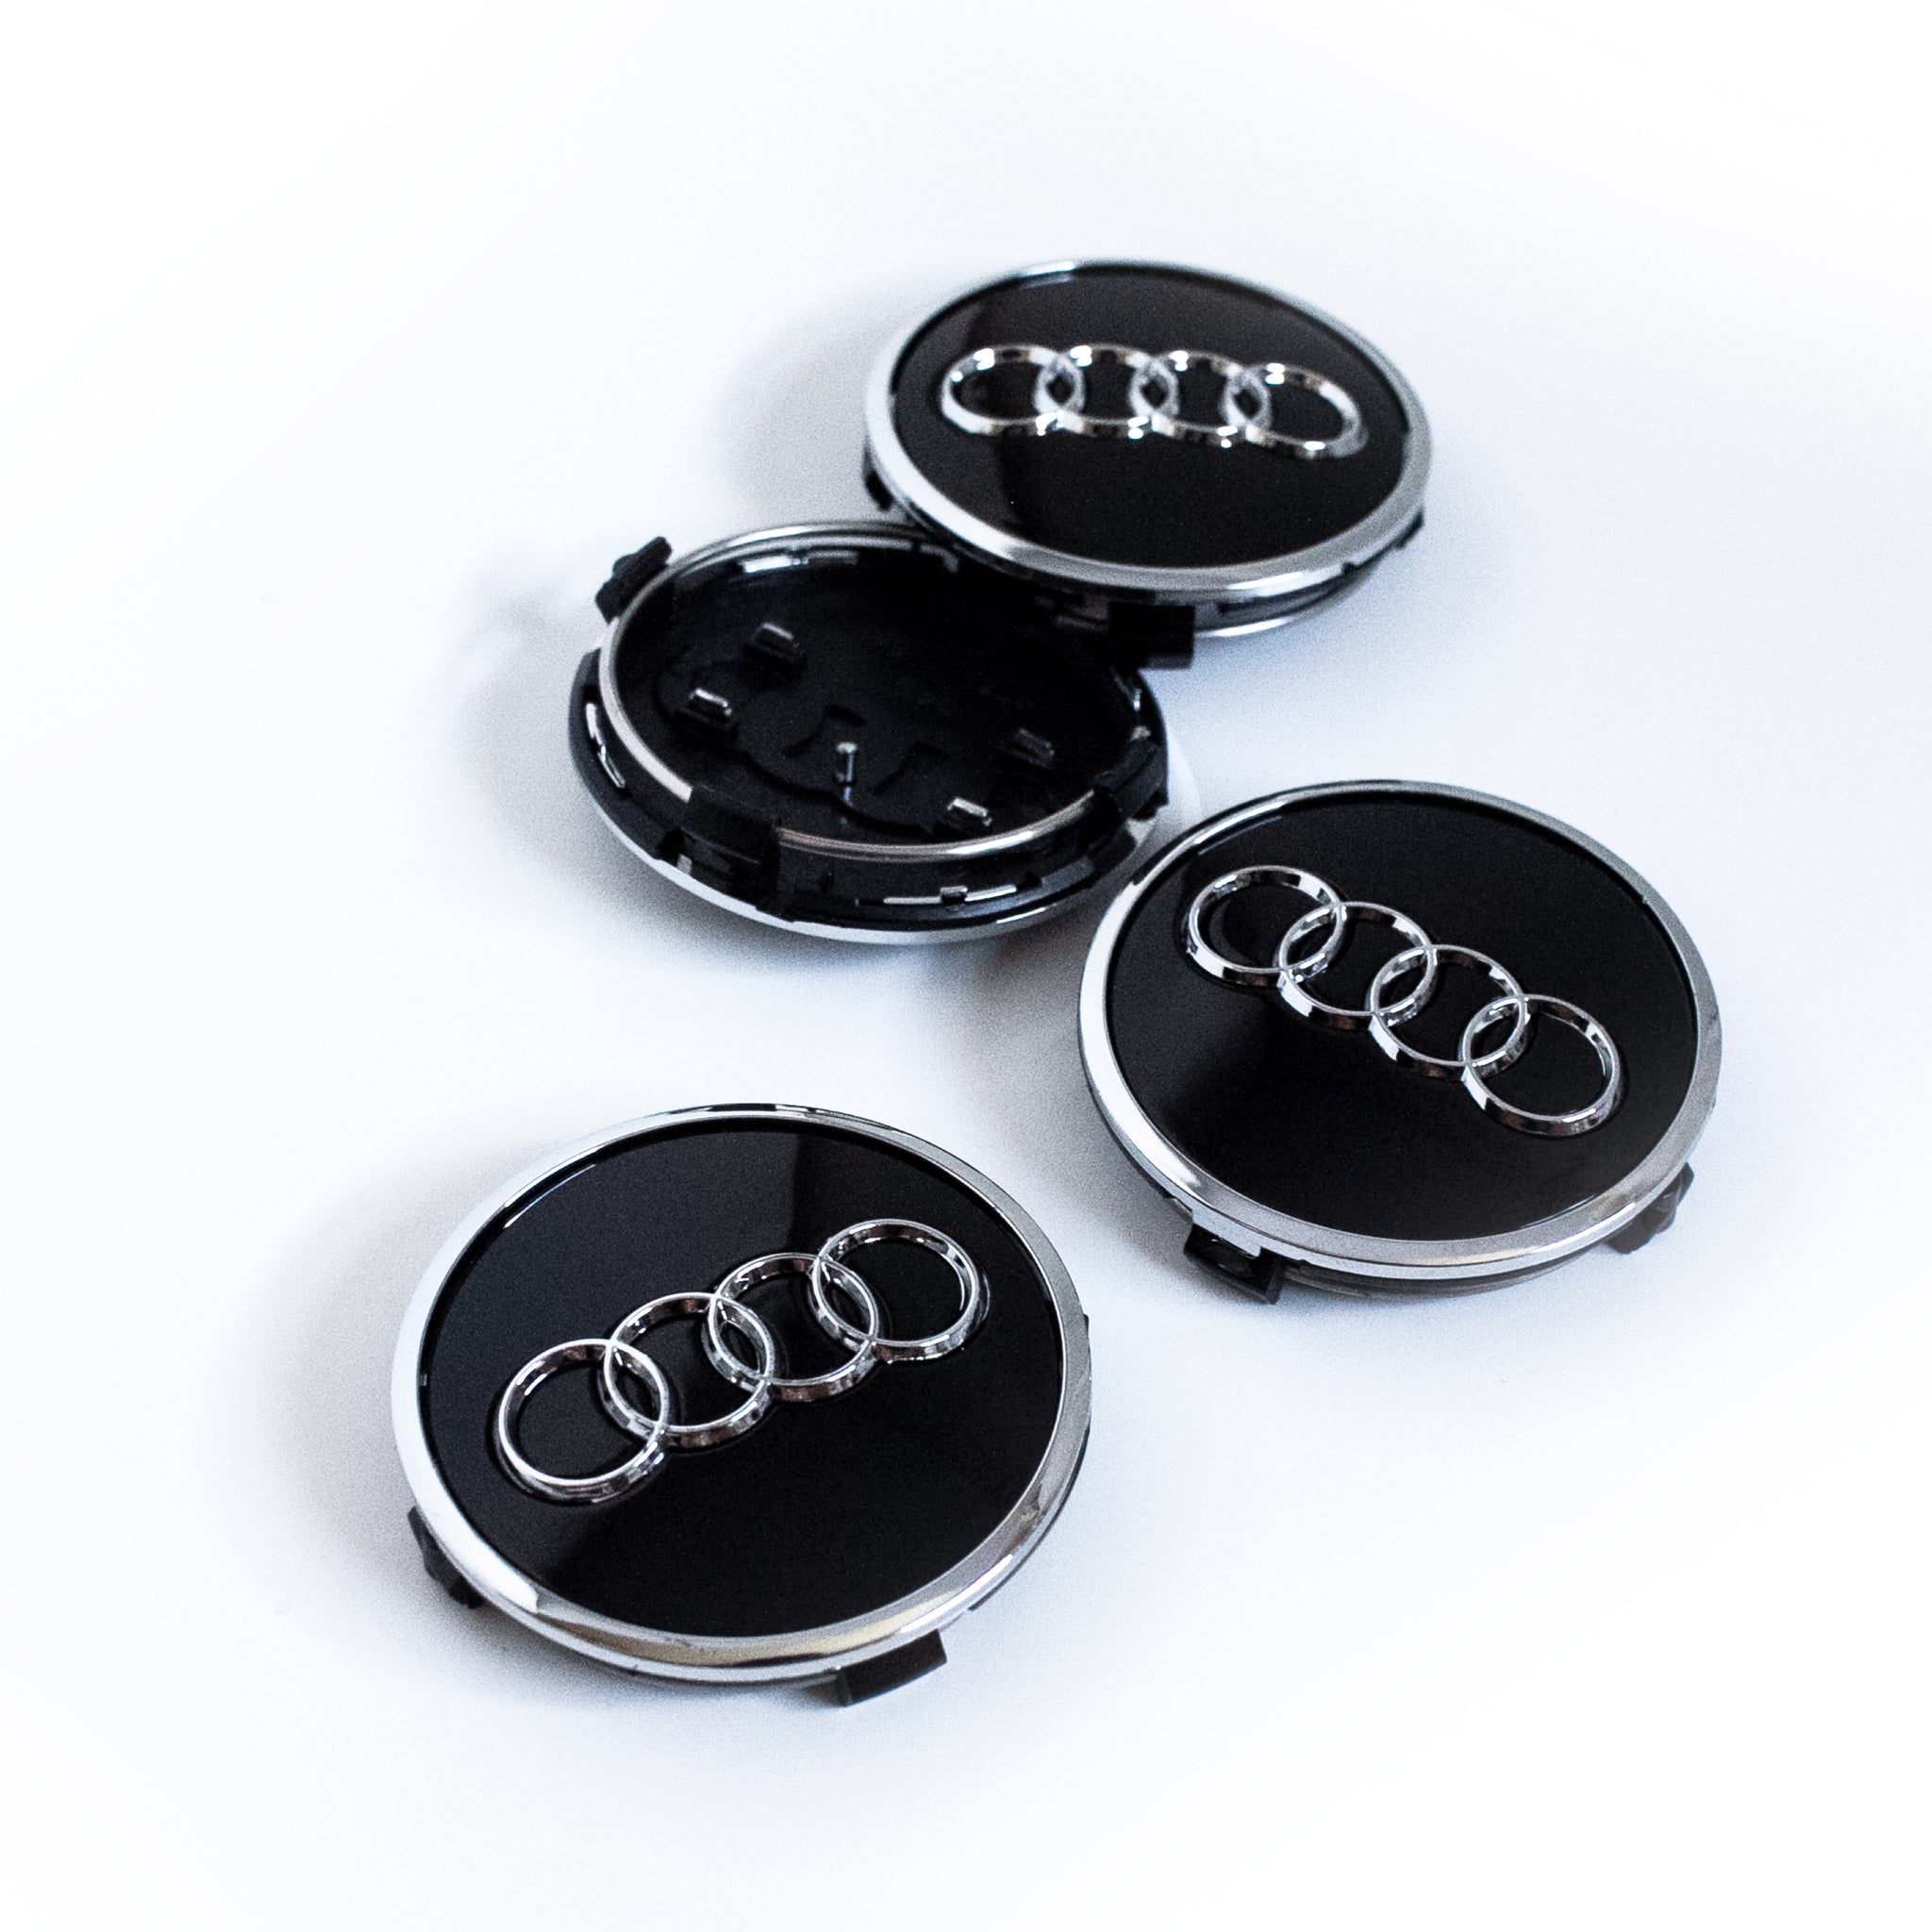 4PCS 69mm Black Audi Wheel Center Caps Fits C58939 Audi A3, A4, A5, Q7,  RS7, S5, TT OEM #8W0601170B